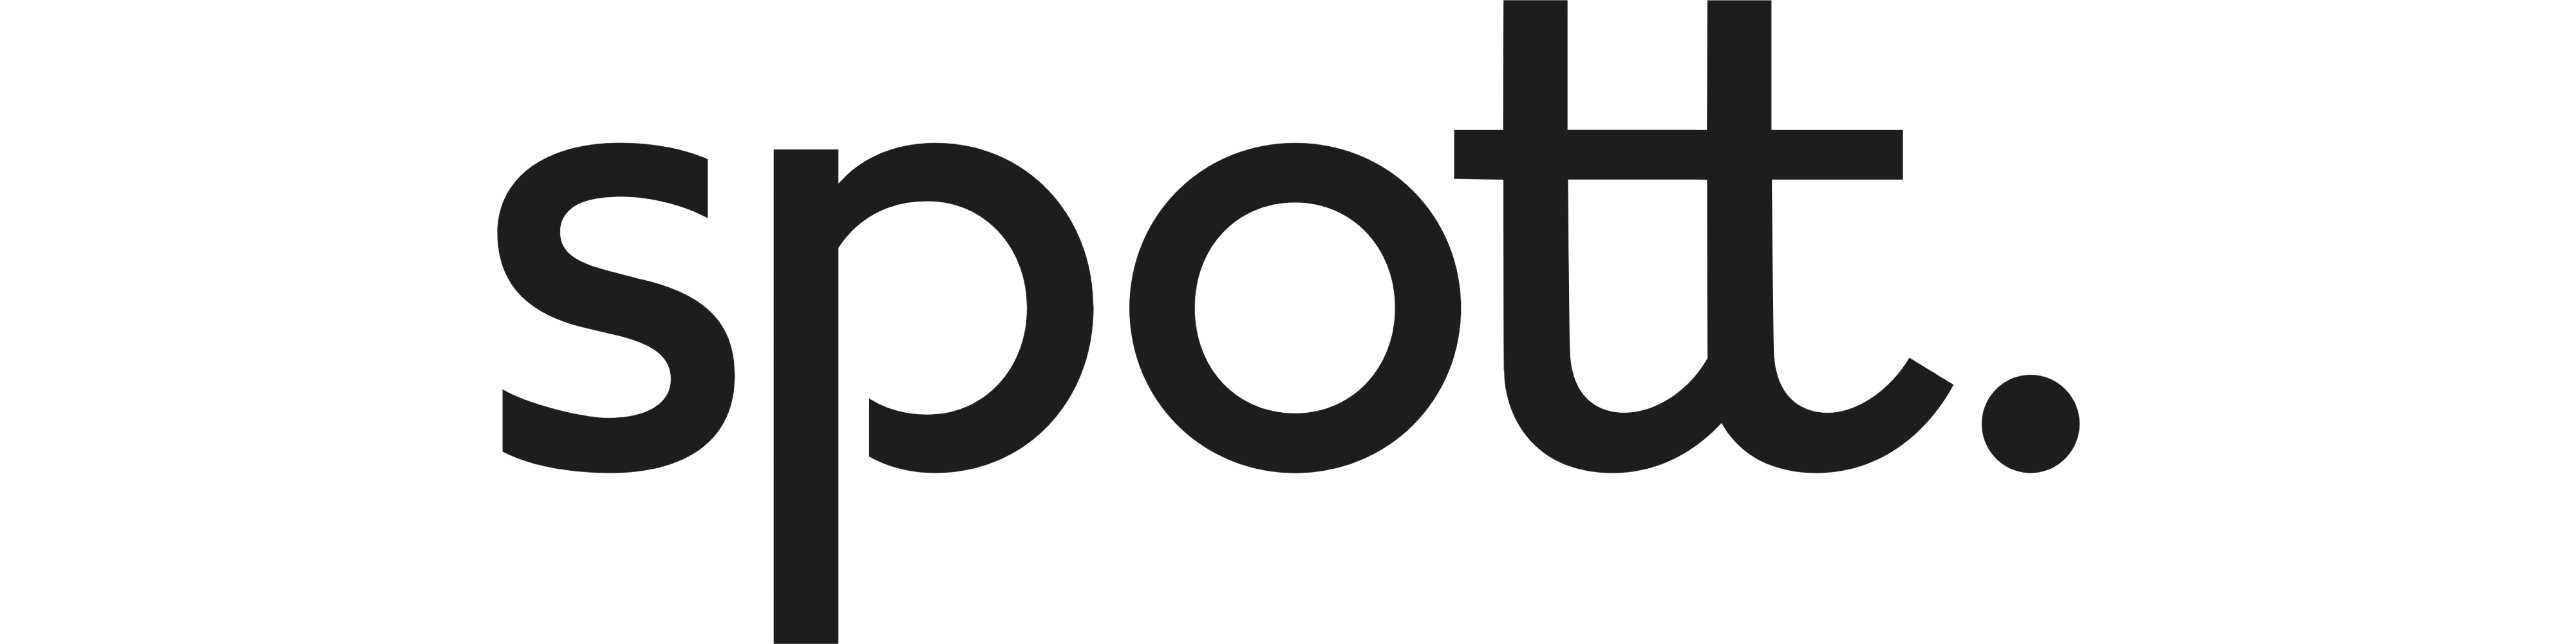 spott business insurance logo